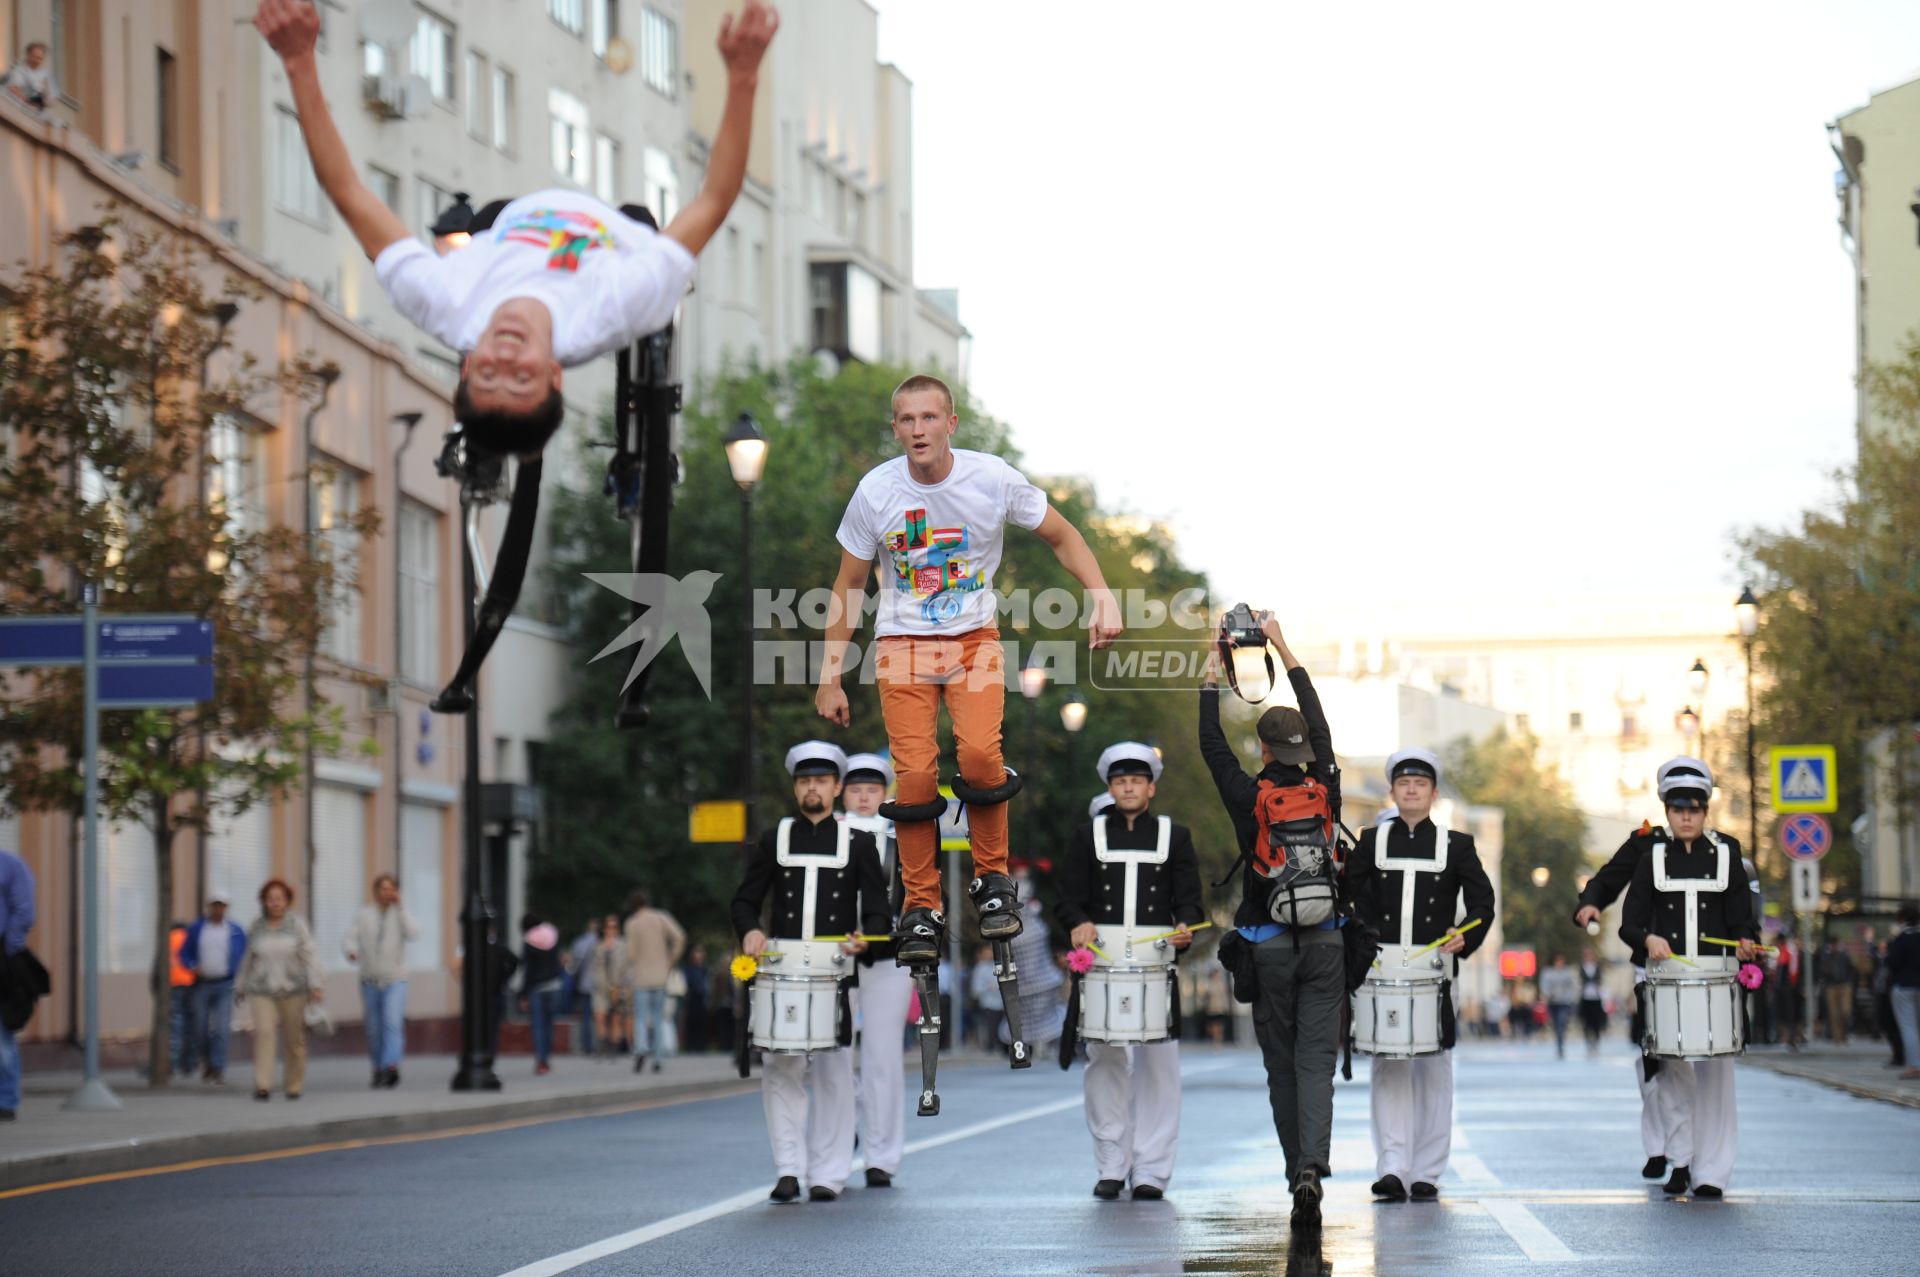 Открытие пешеходной зоны на улицах Покровка. На снимке: артисты прыгают на джамперах.